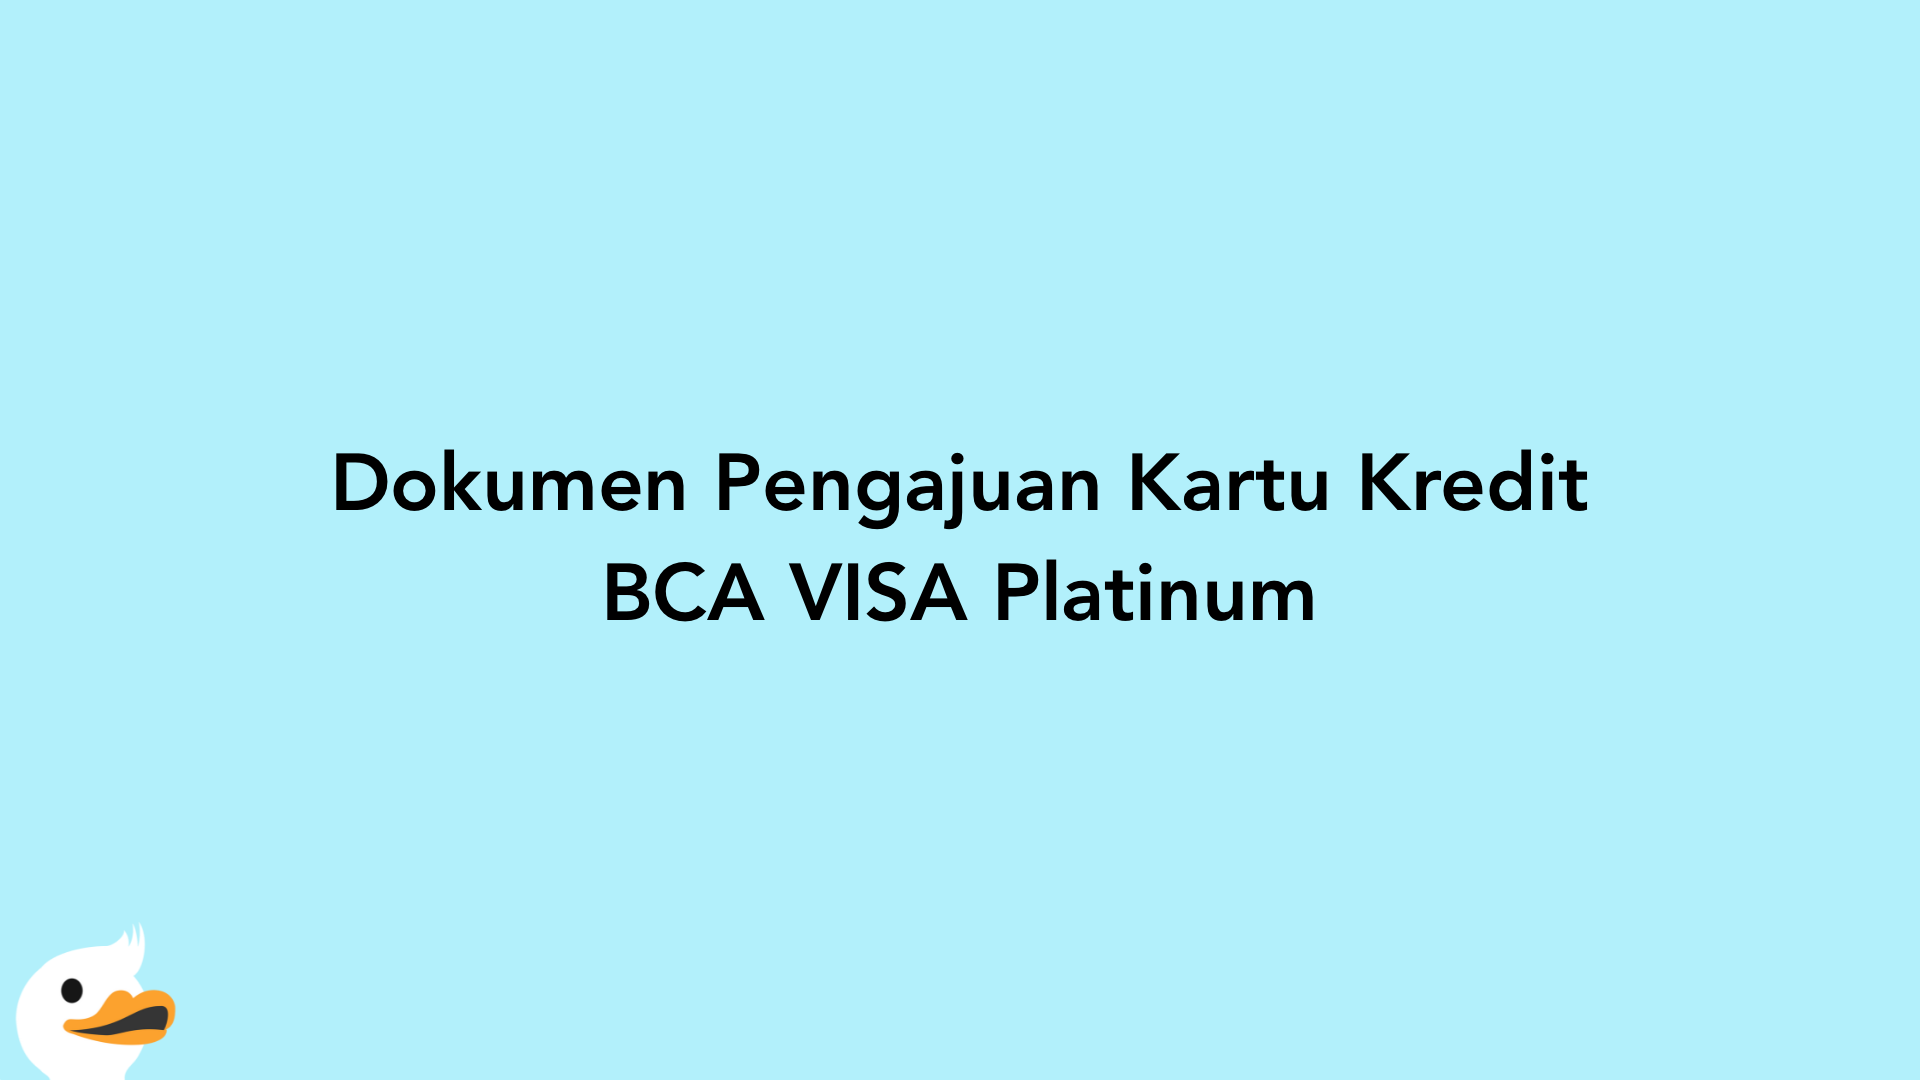 Dokumen Pengajuan Kartu Kredit BCA VISA Platinum